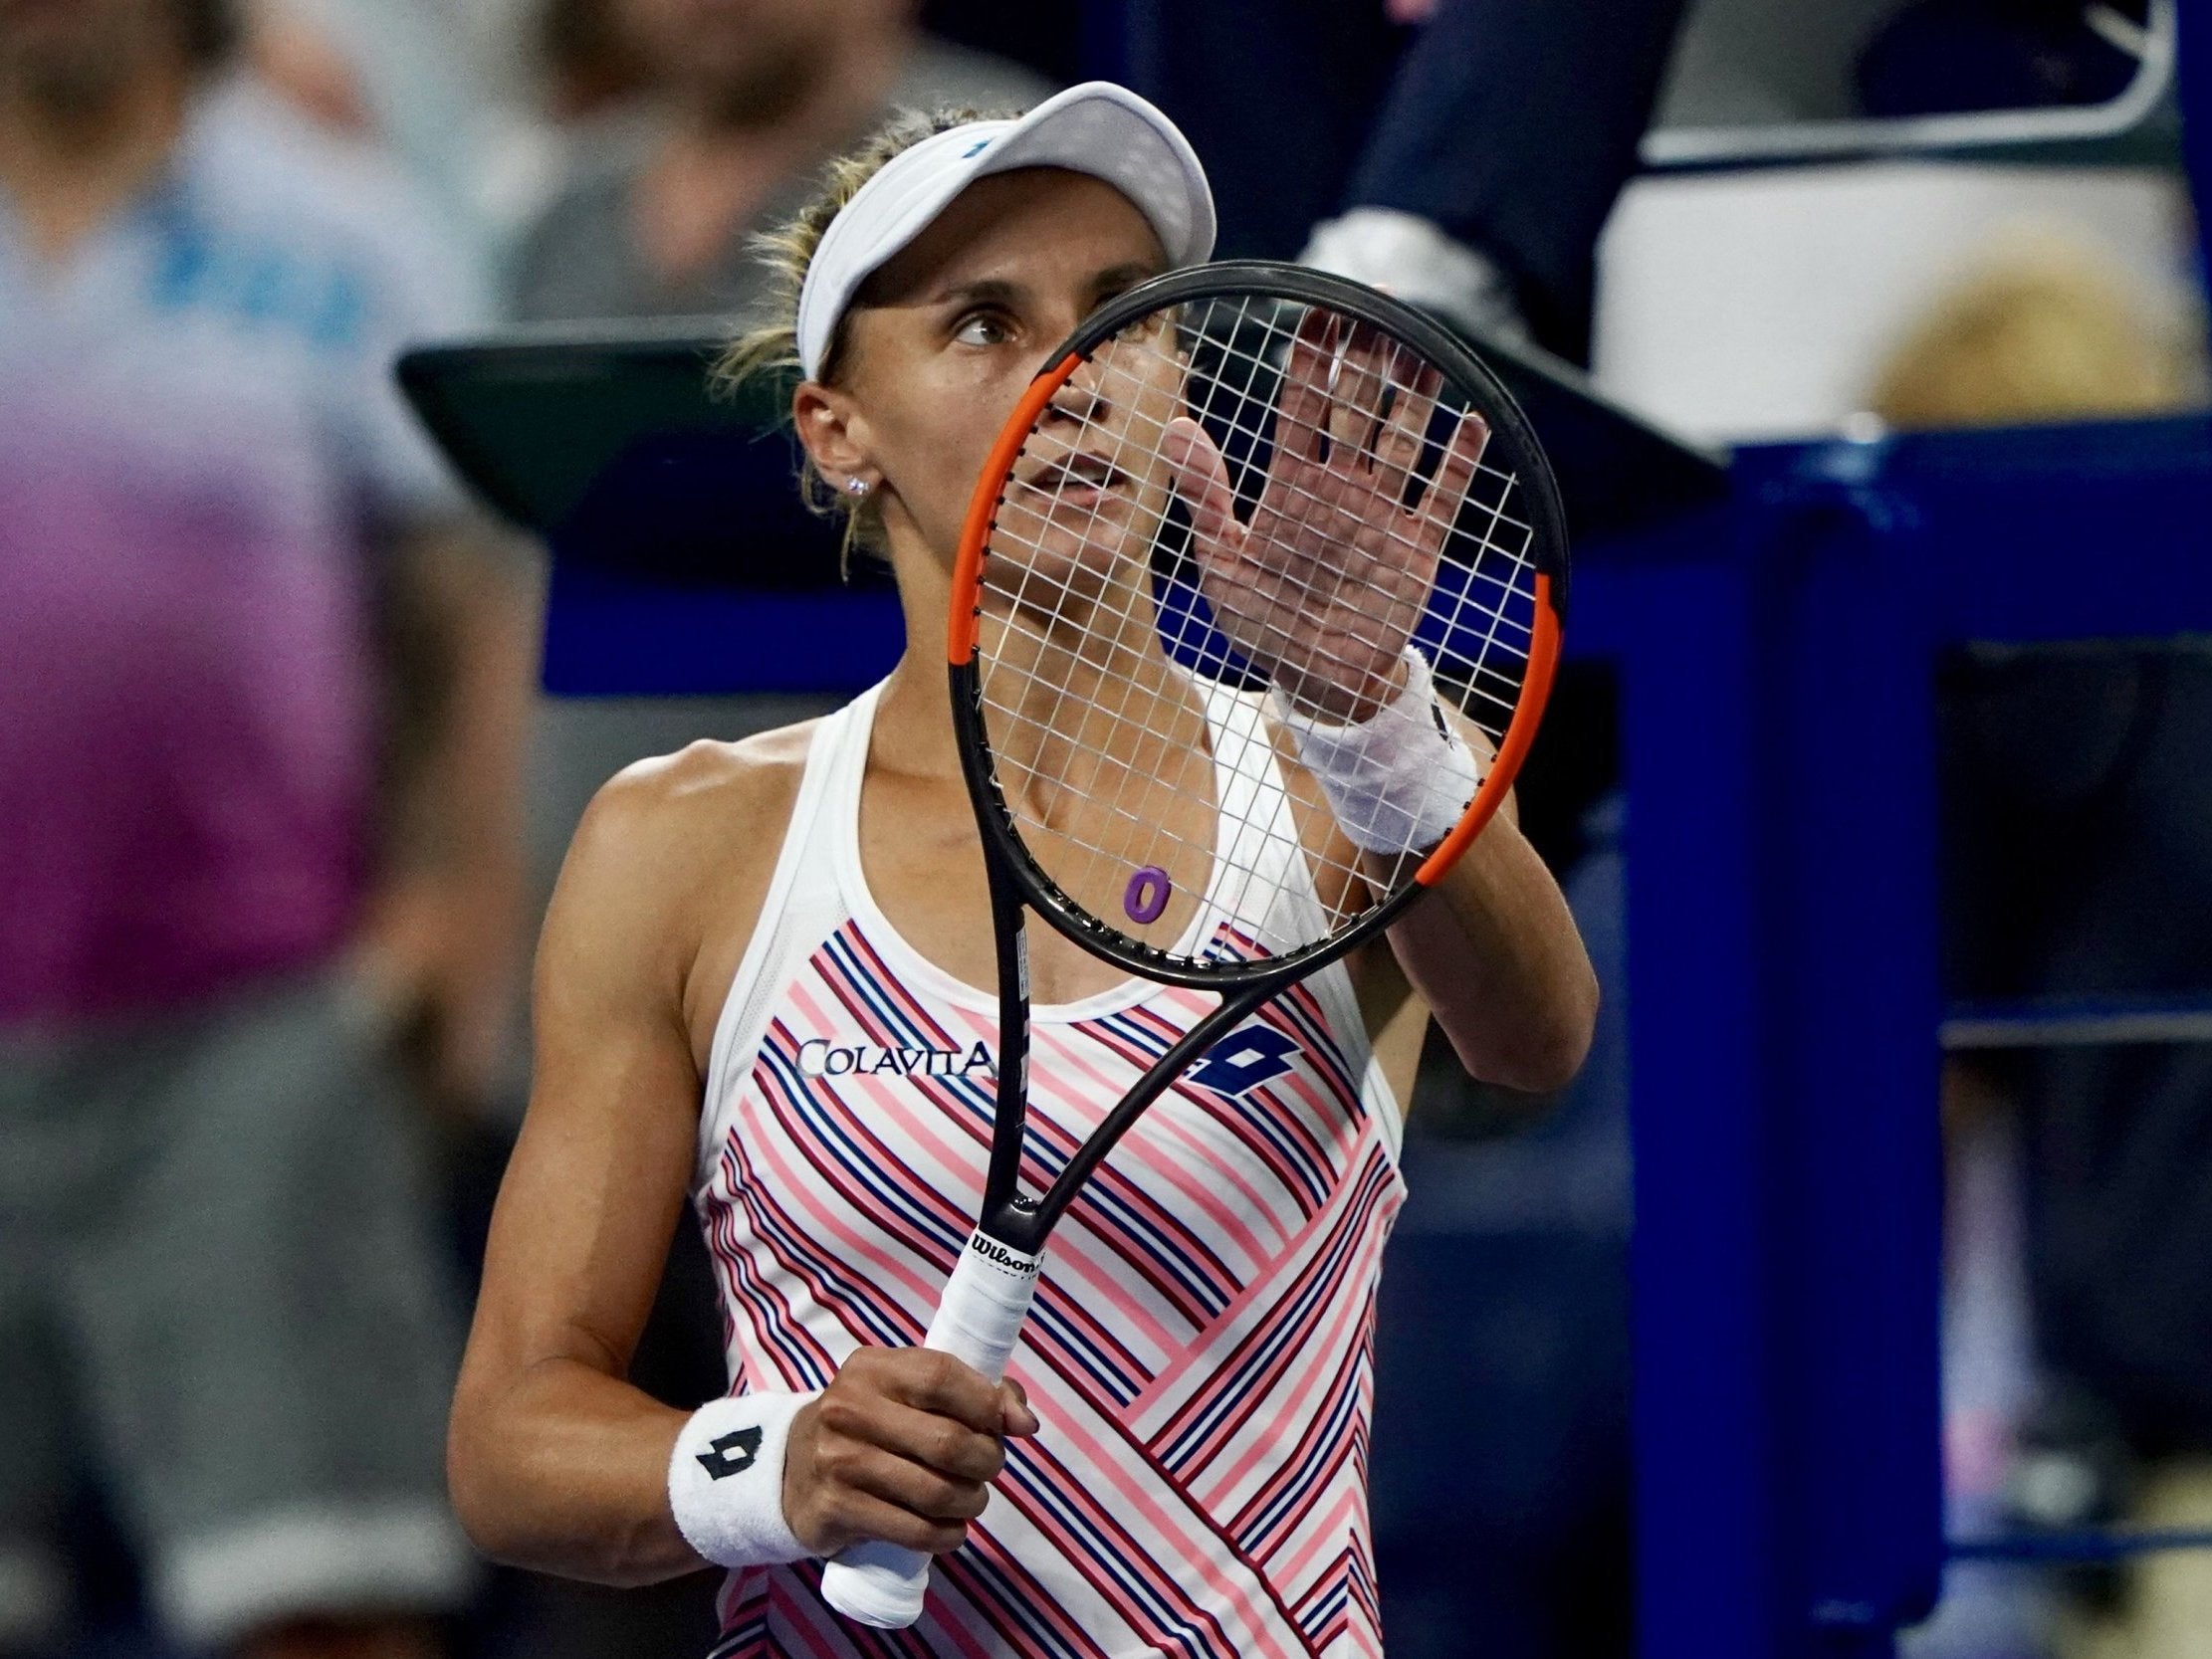 Lesia Tsurenko progressed to the third round at the expense of Wozniacki